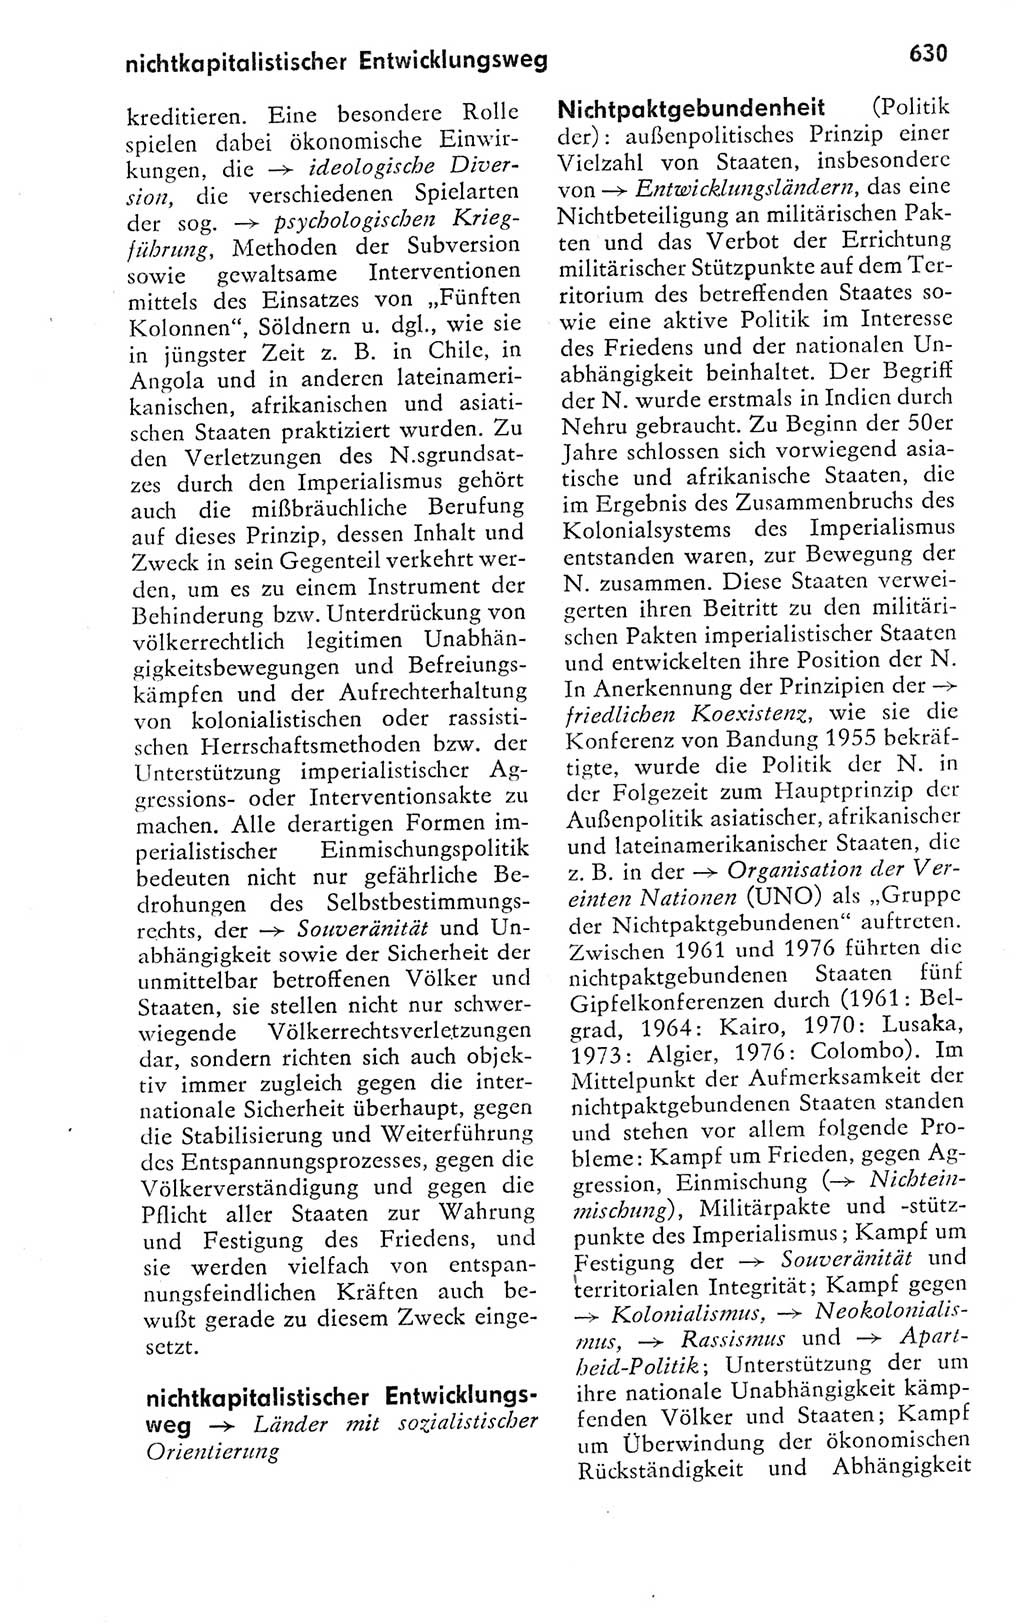 Kleines politisches Wörterbuch [Deutsche Demokratische Republik (DDR)] 1978, Seite 630 (Kl. pol. Wb. DDR 1978, S. 630)